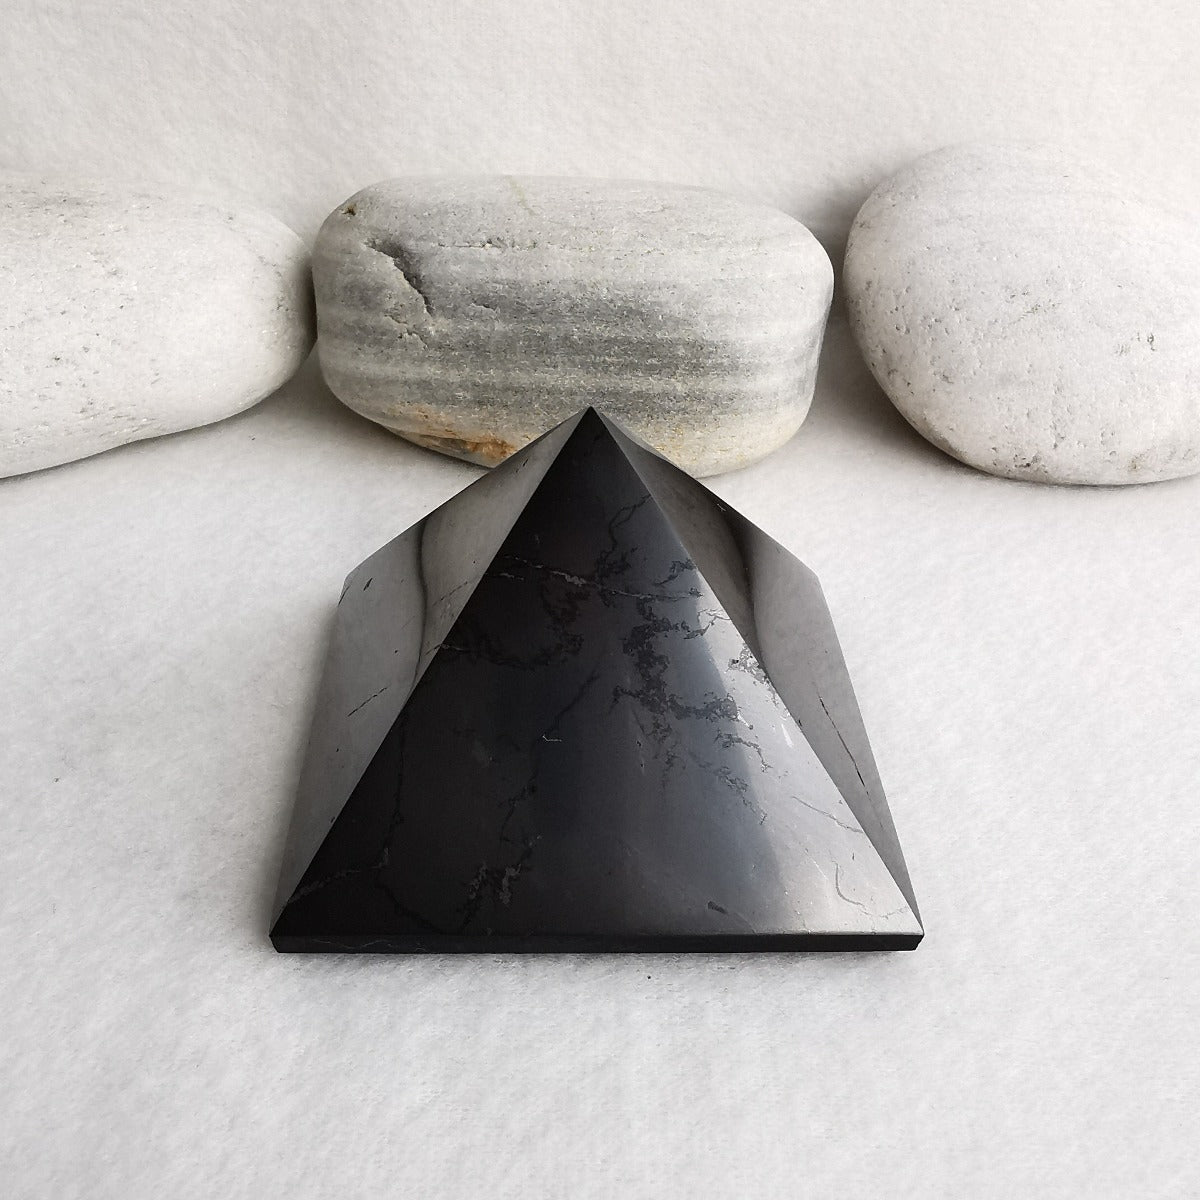 Shungite Pyramid Polished 7x7 cm - EMF Protection Stone